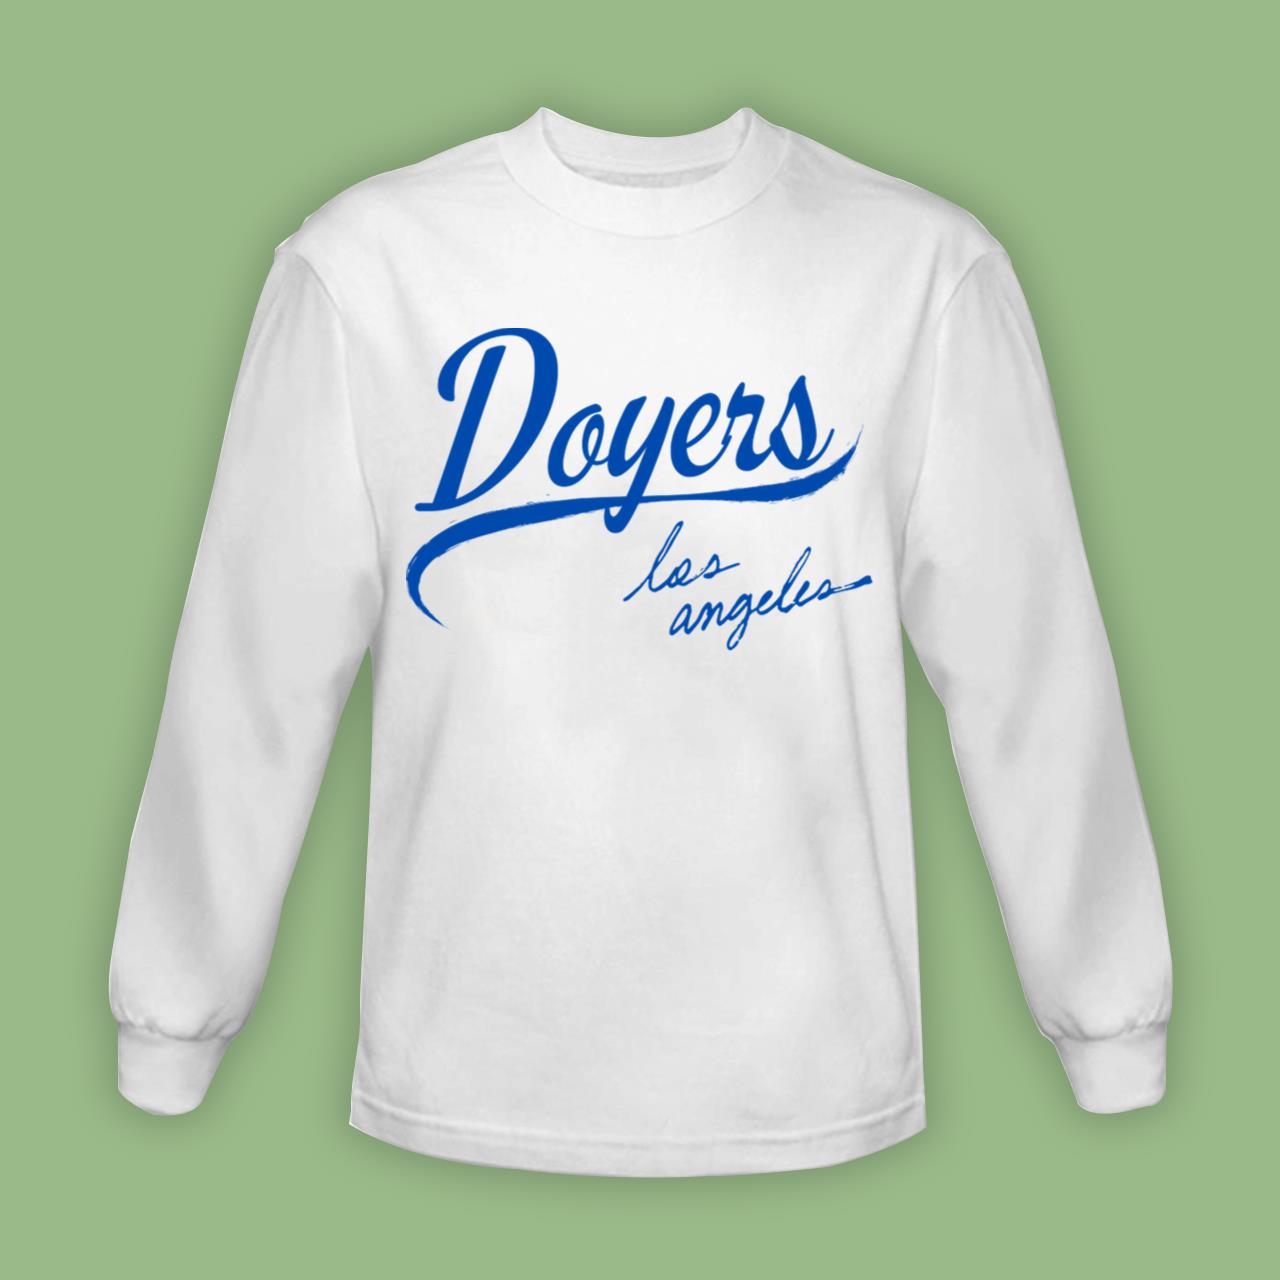 Los angeles dodgers los doyers 2022 shirt, hoodie, longsleeve tee, sweater